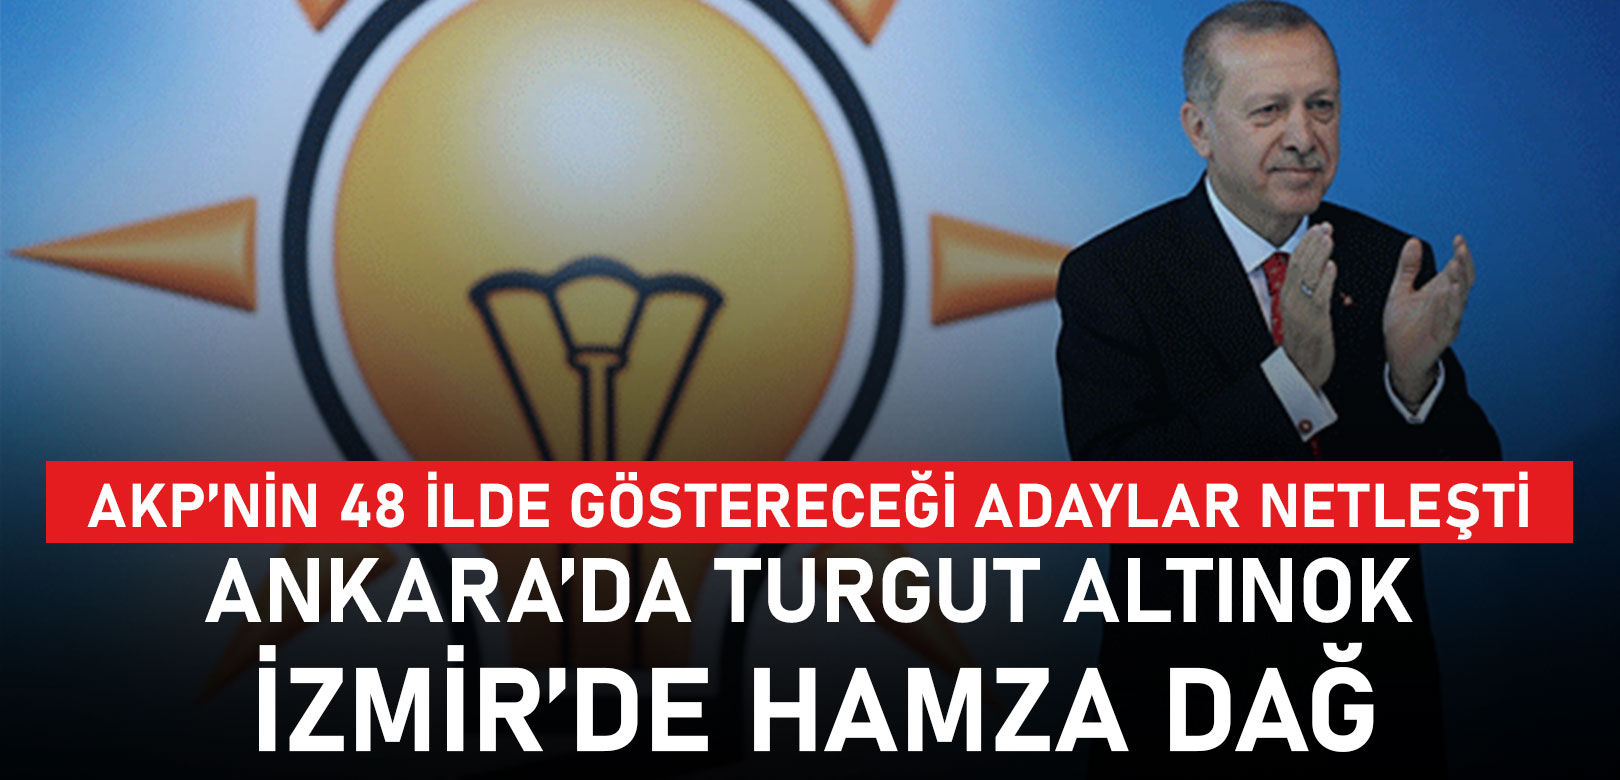 AKP'nin 48 ildeki adayları belli oldu: Ankara'da Turgut Altınok, İzmir'de Hamza Dağ